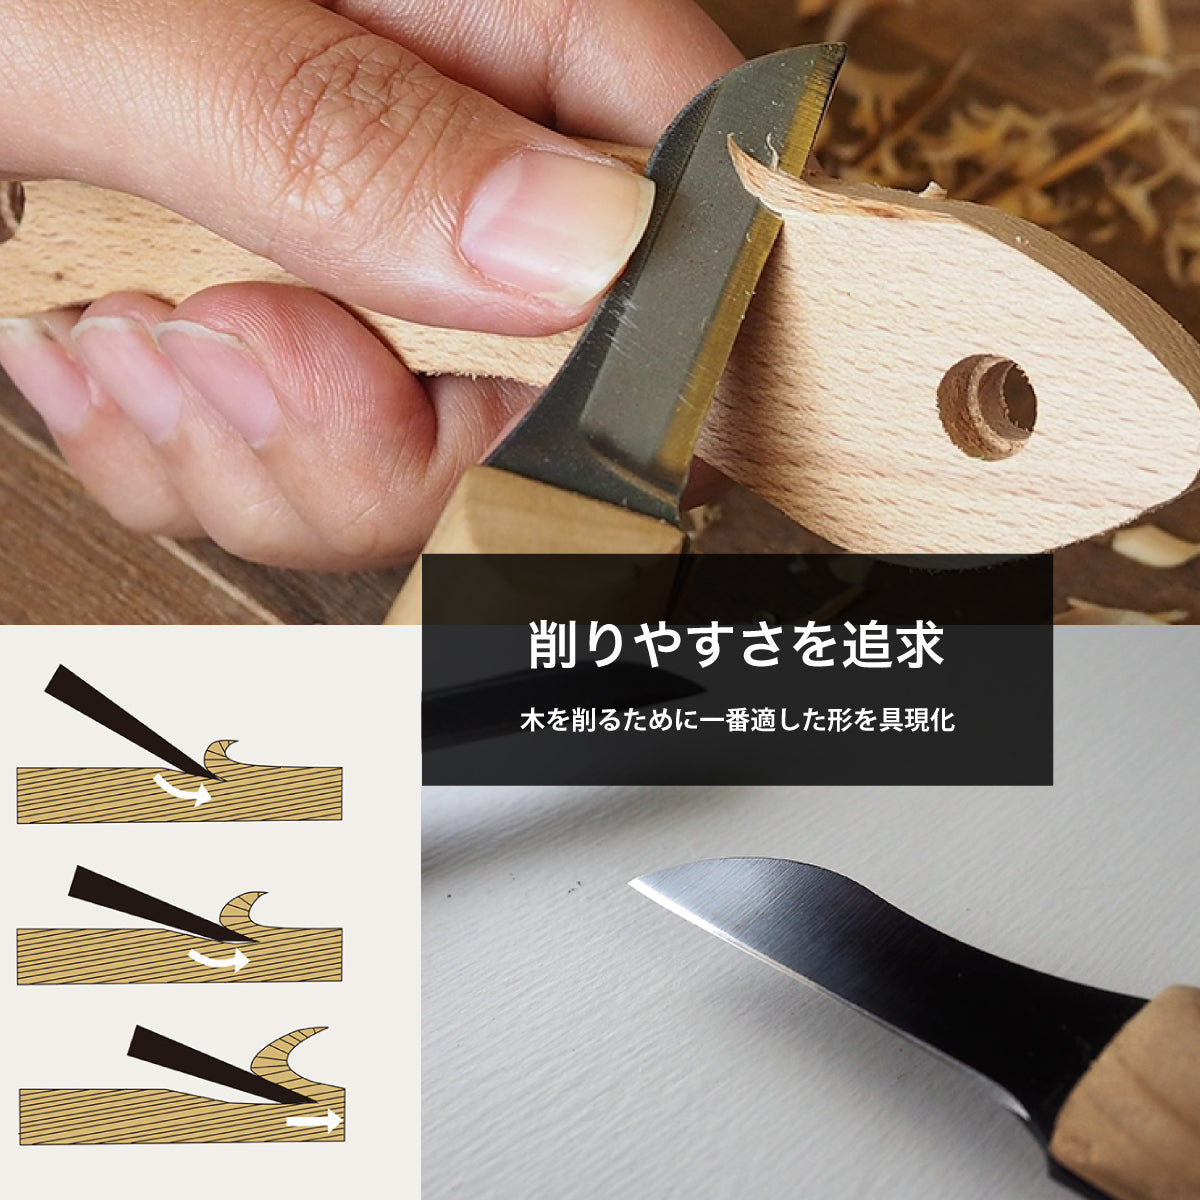 【難易度★☆☆】It's my knife Craft Easy (炭素鋼/青紙二号) 4,290円